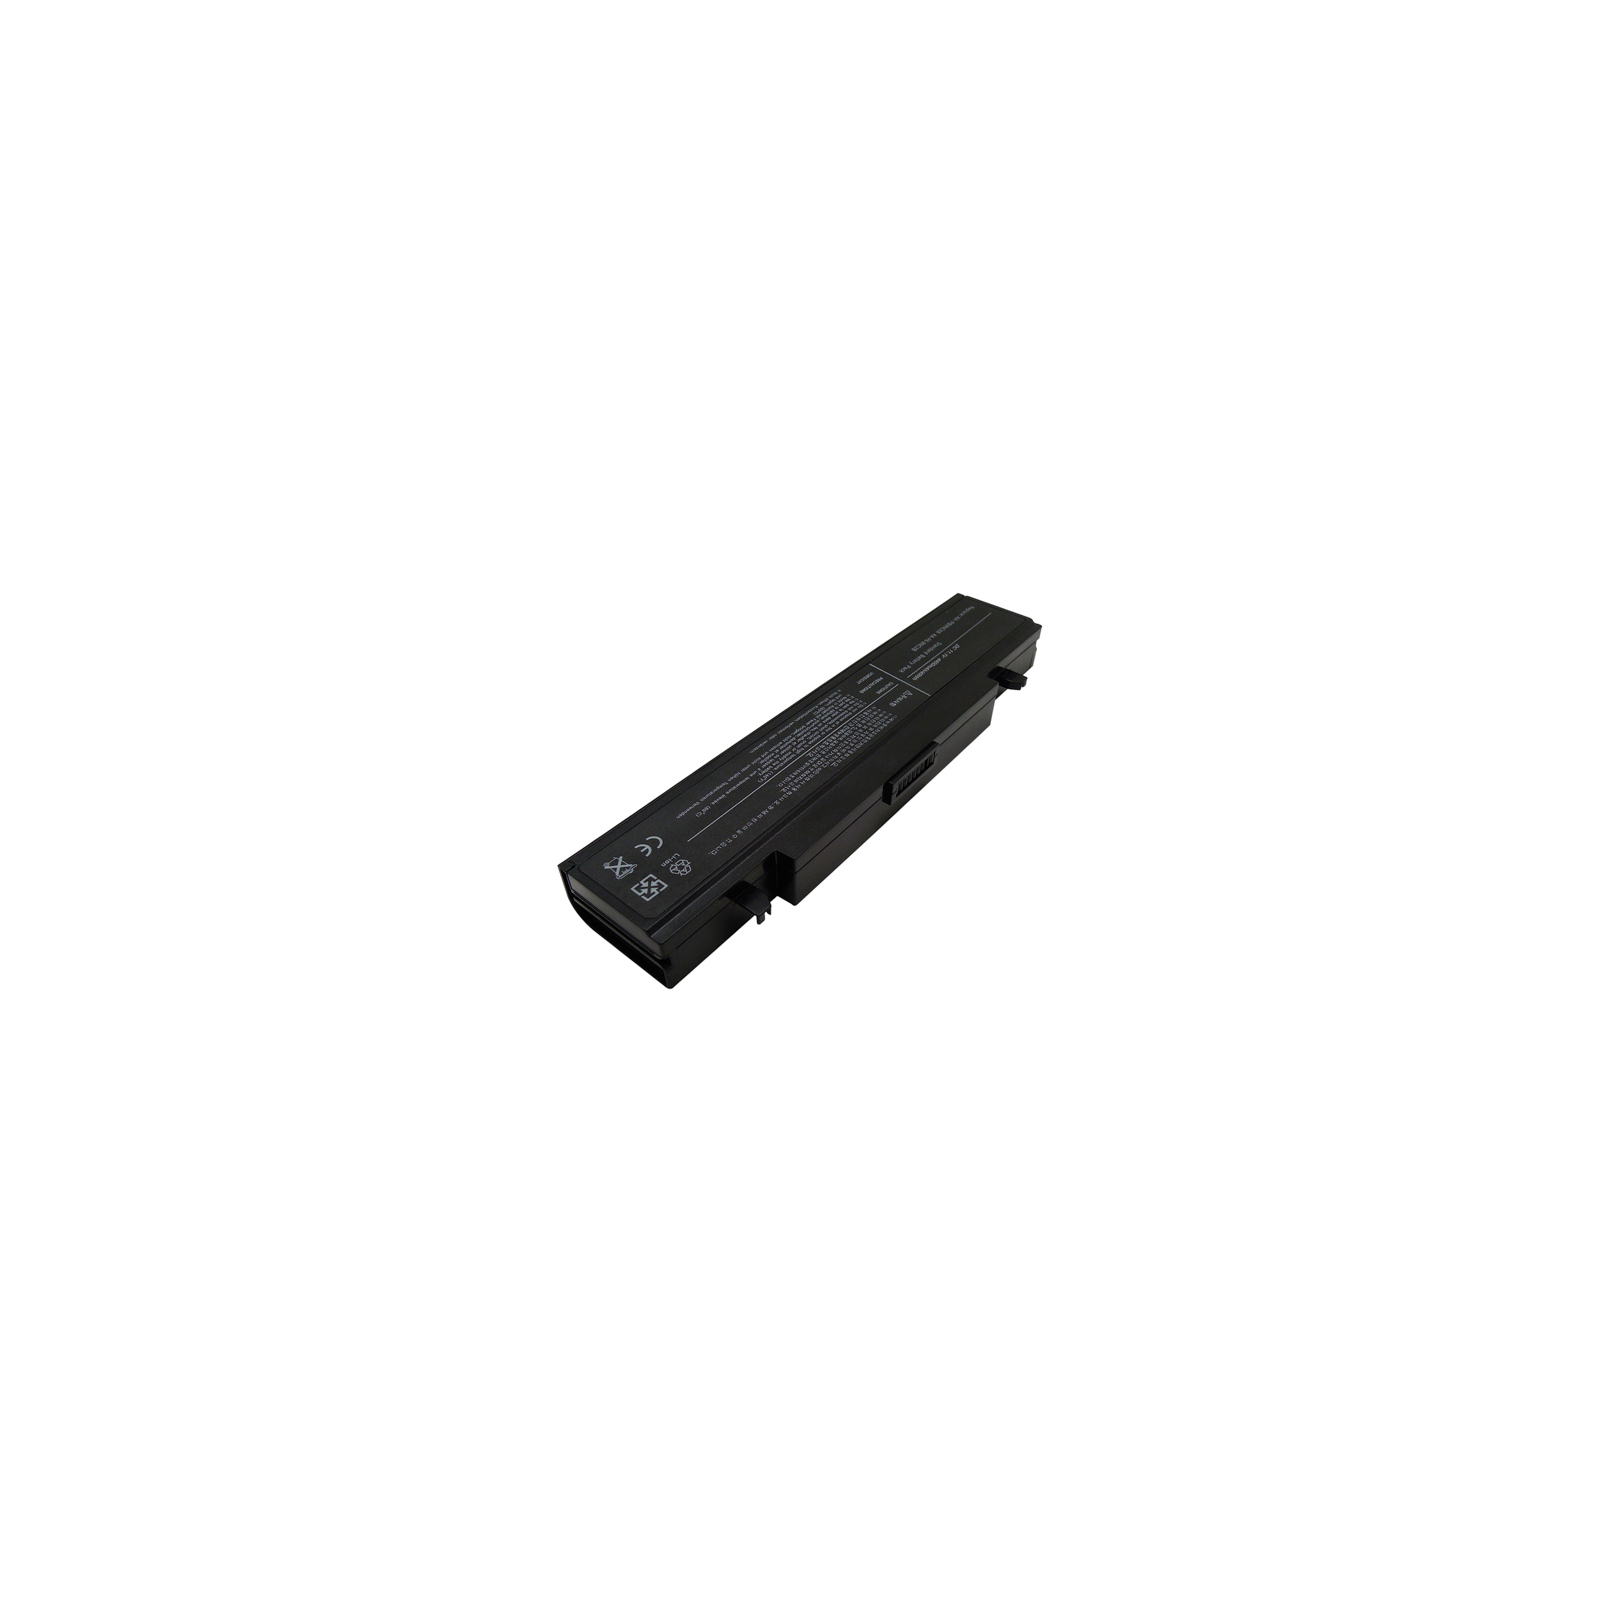 Акумулятор до ноутбука SAMSUNG Q318 (AA-PB9NC6B, SG3180LH) 11.1V, 5200mAh PowerPlant (NB00000059)